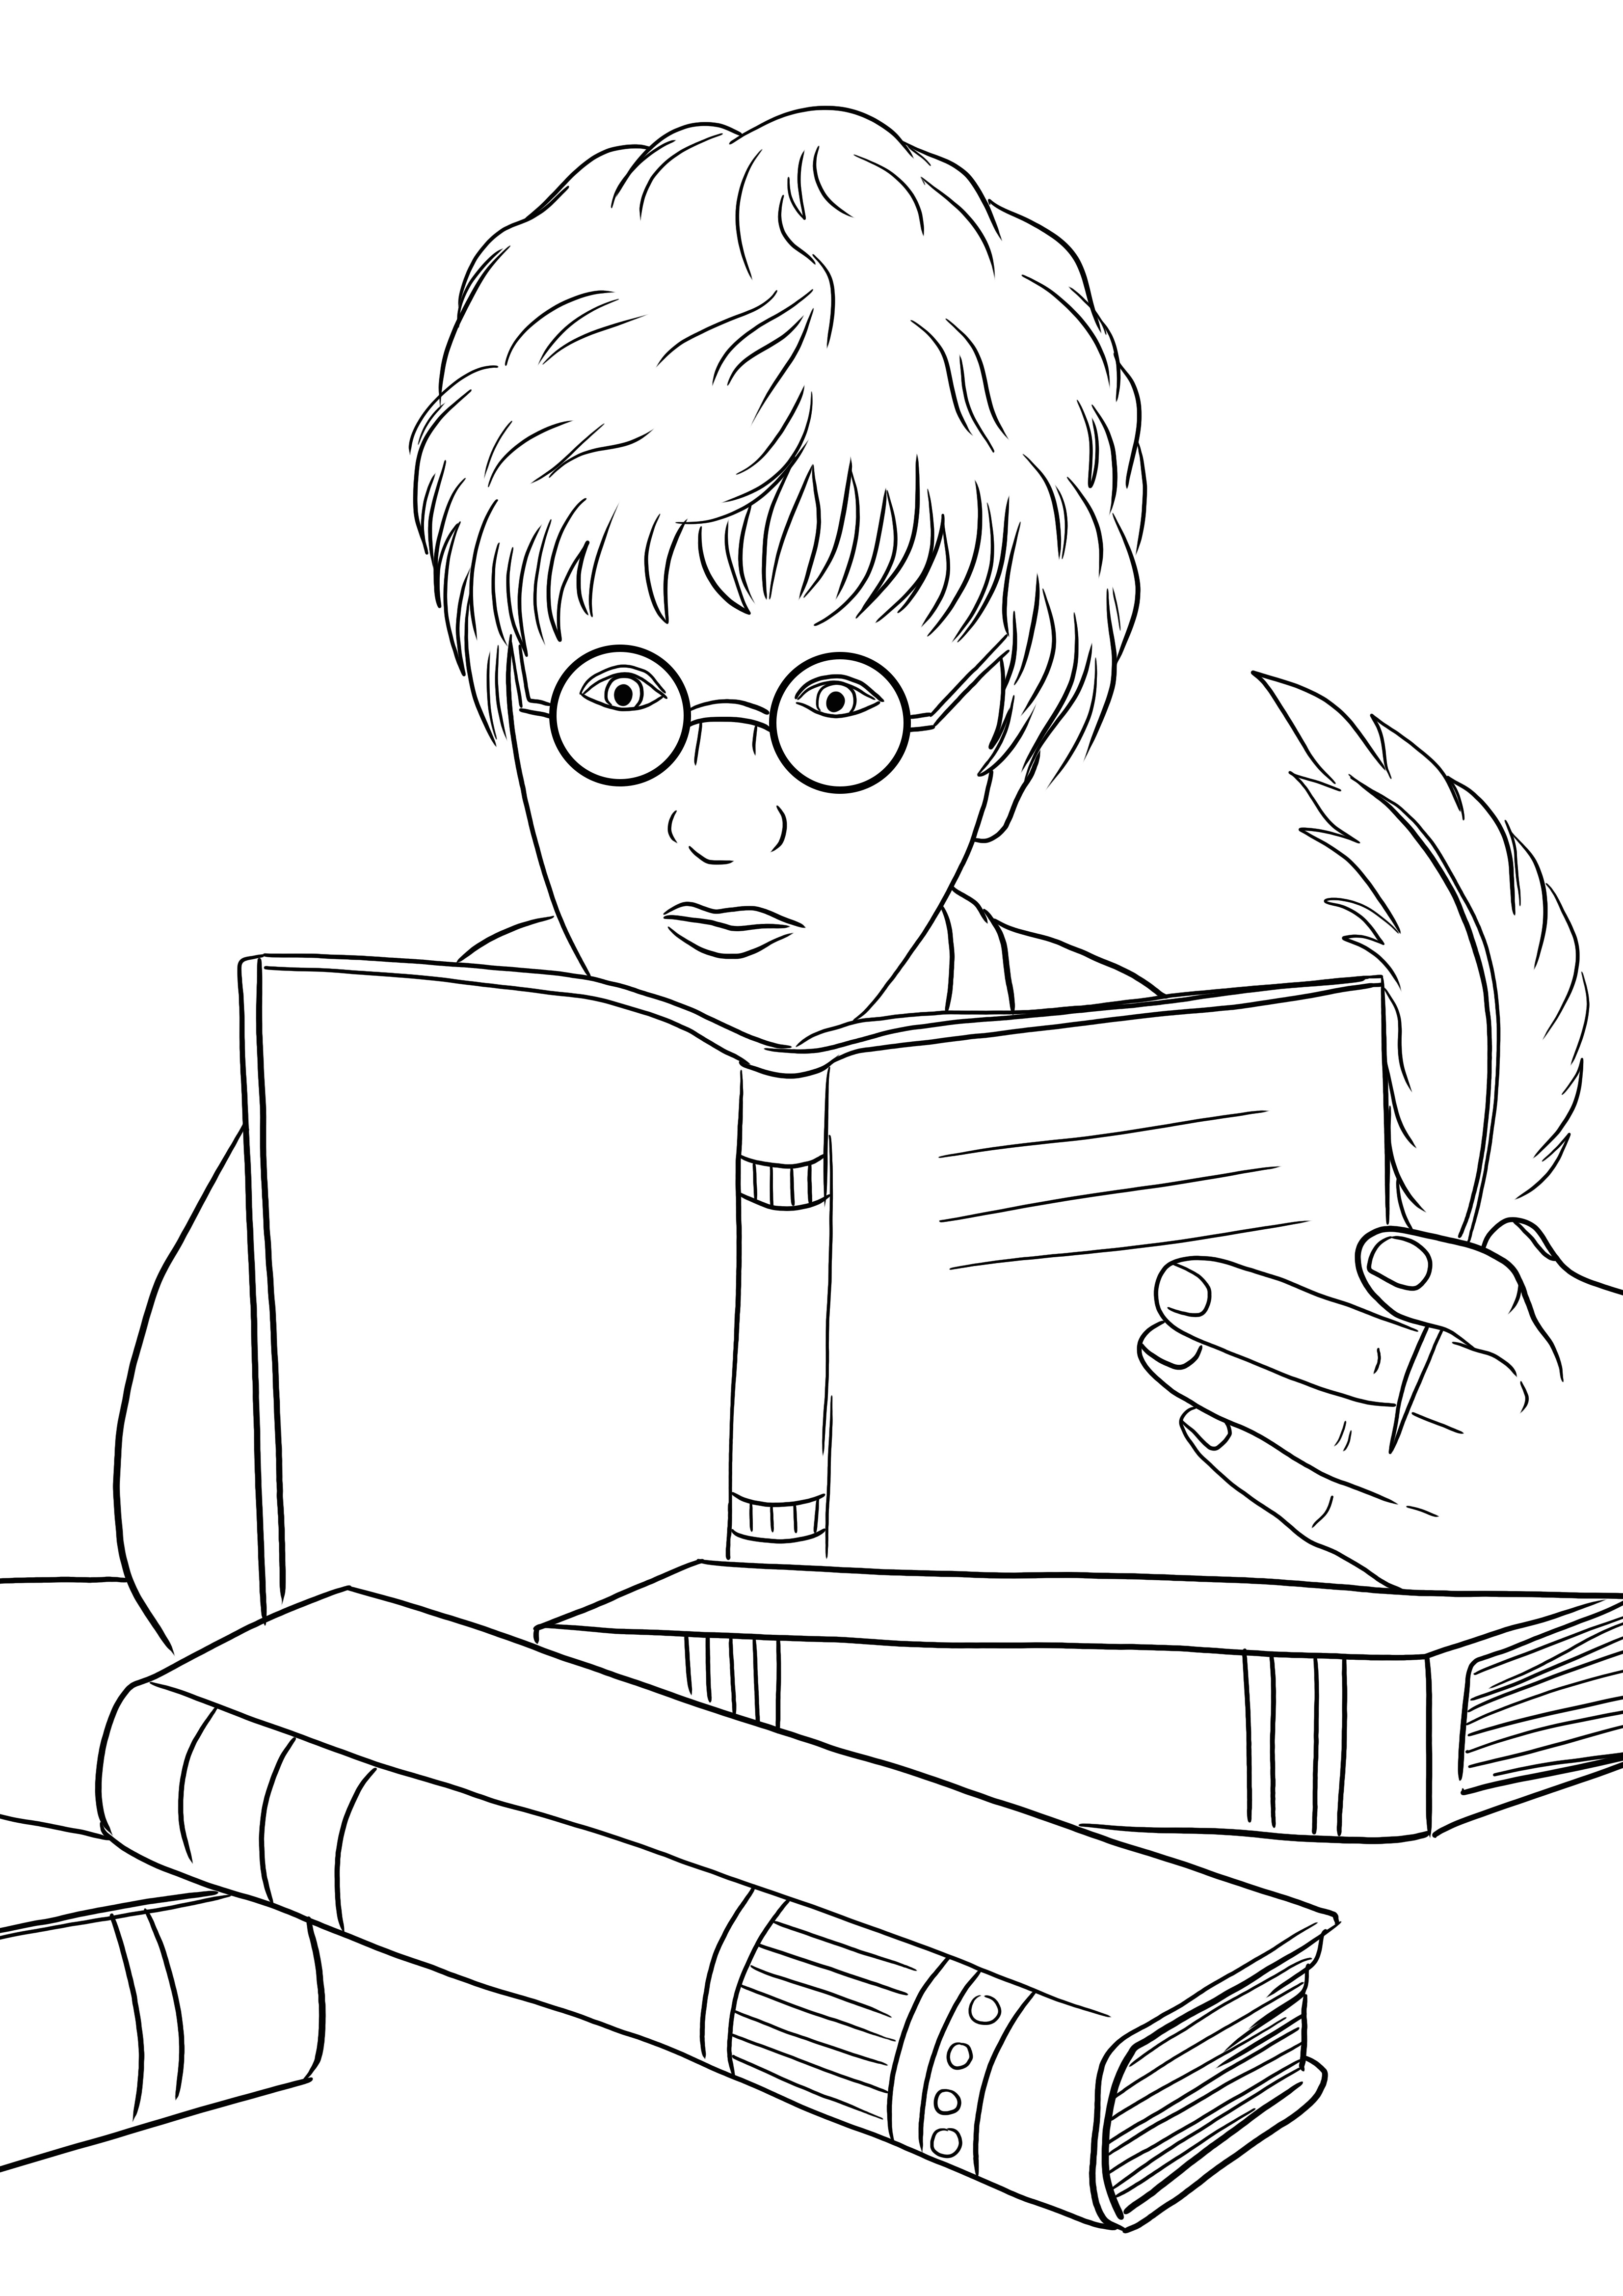 Harry Potter i księga zaklęć do pobrania lub wydrukowania za darmo i łatwe do pokolorowania